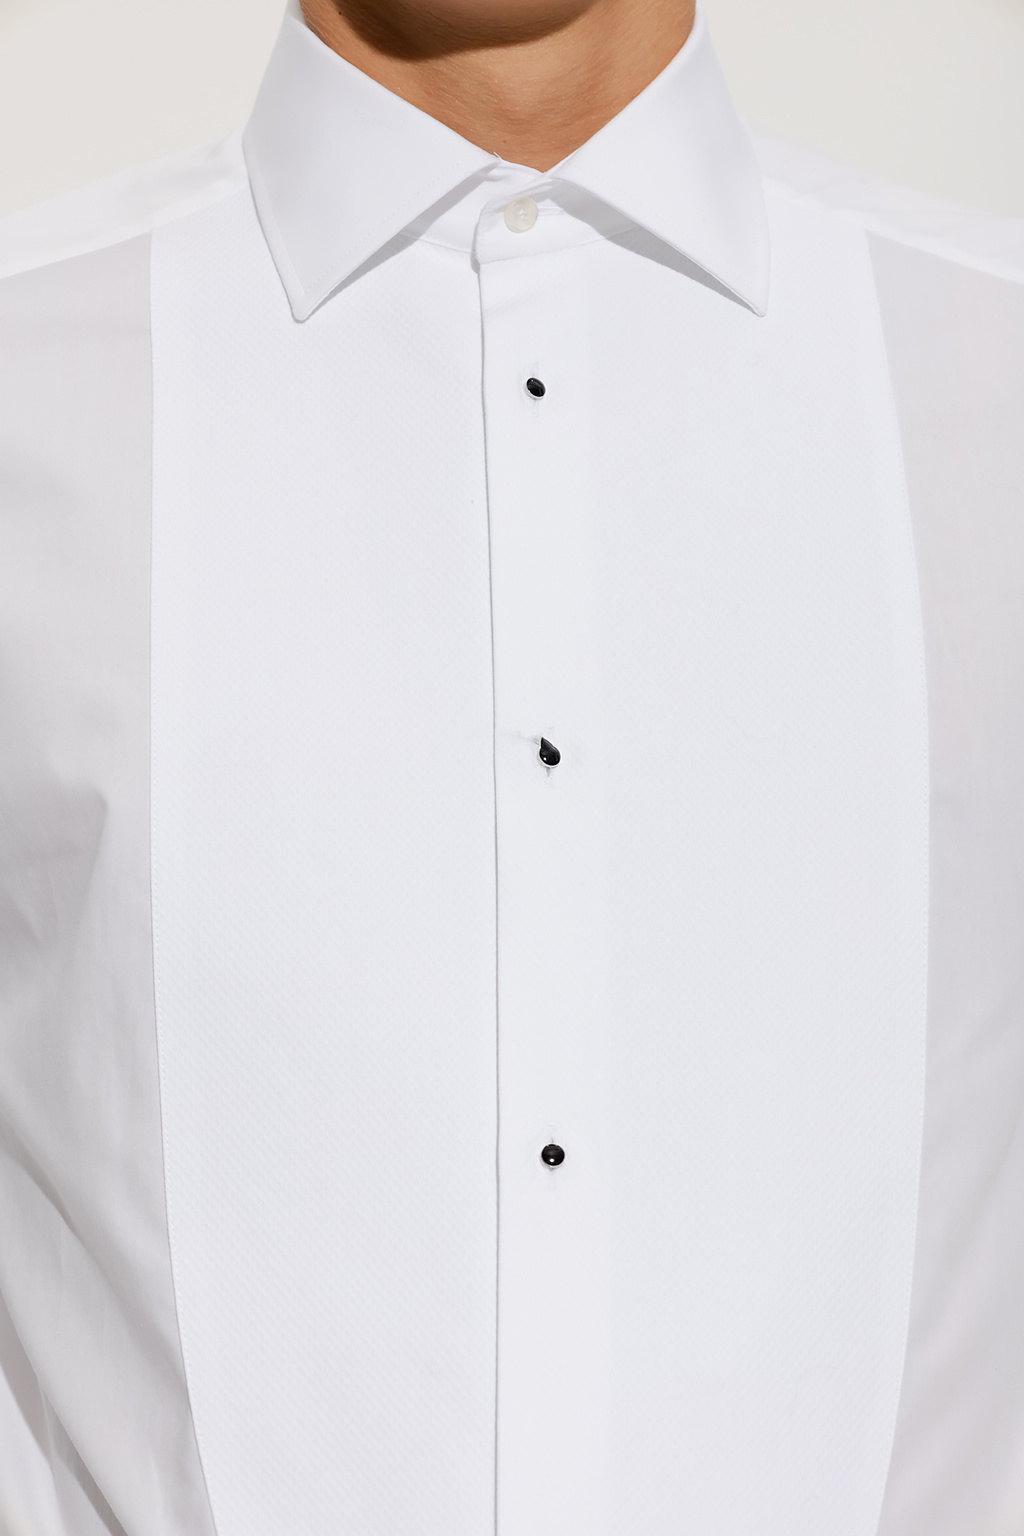 dolce patch & Gabbana Cotton tuxedo shirt